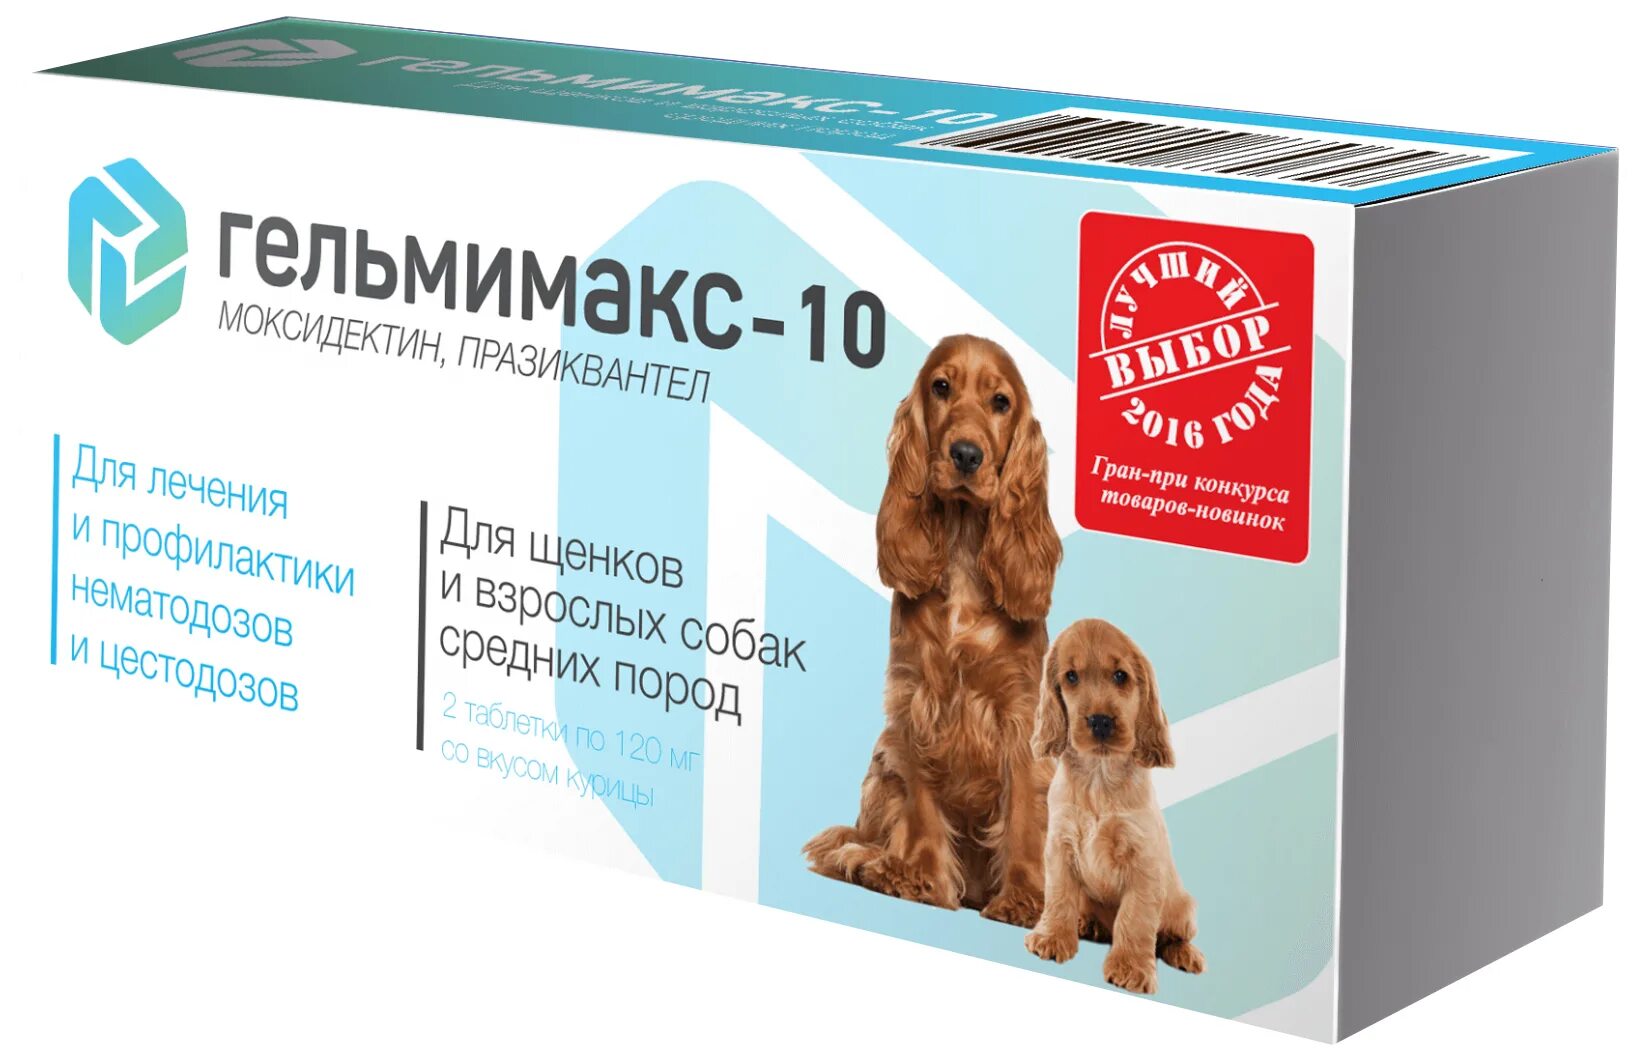 Apicenna Гельмимакс - 10 таблетки для щенков и взрослых средних пород 2 таб.. Гельмимакс 10 для щенков и собак средних пород. Гельмимакс-4. Гельмимакс для кошек и собак. Глистогонное для собак купить